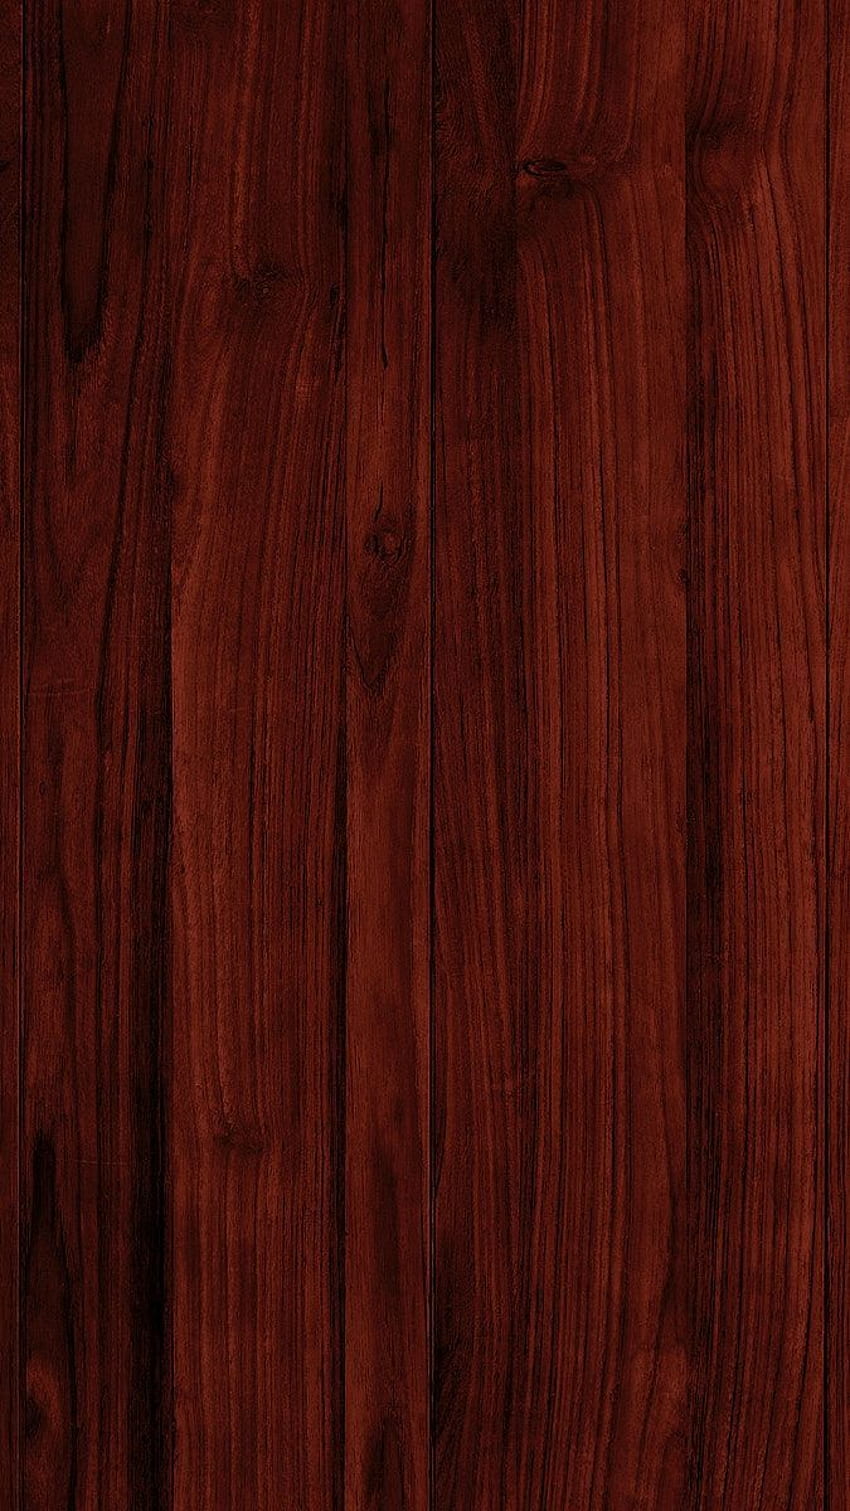 móvil con textura de madera roja. / sasi en 2020. Textura de madera, Textura de madera de nogal, Textura de madera negra fondo de pantalla del teléfono